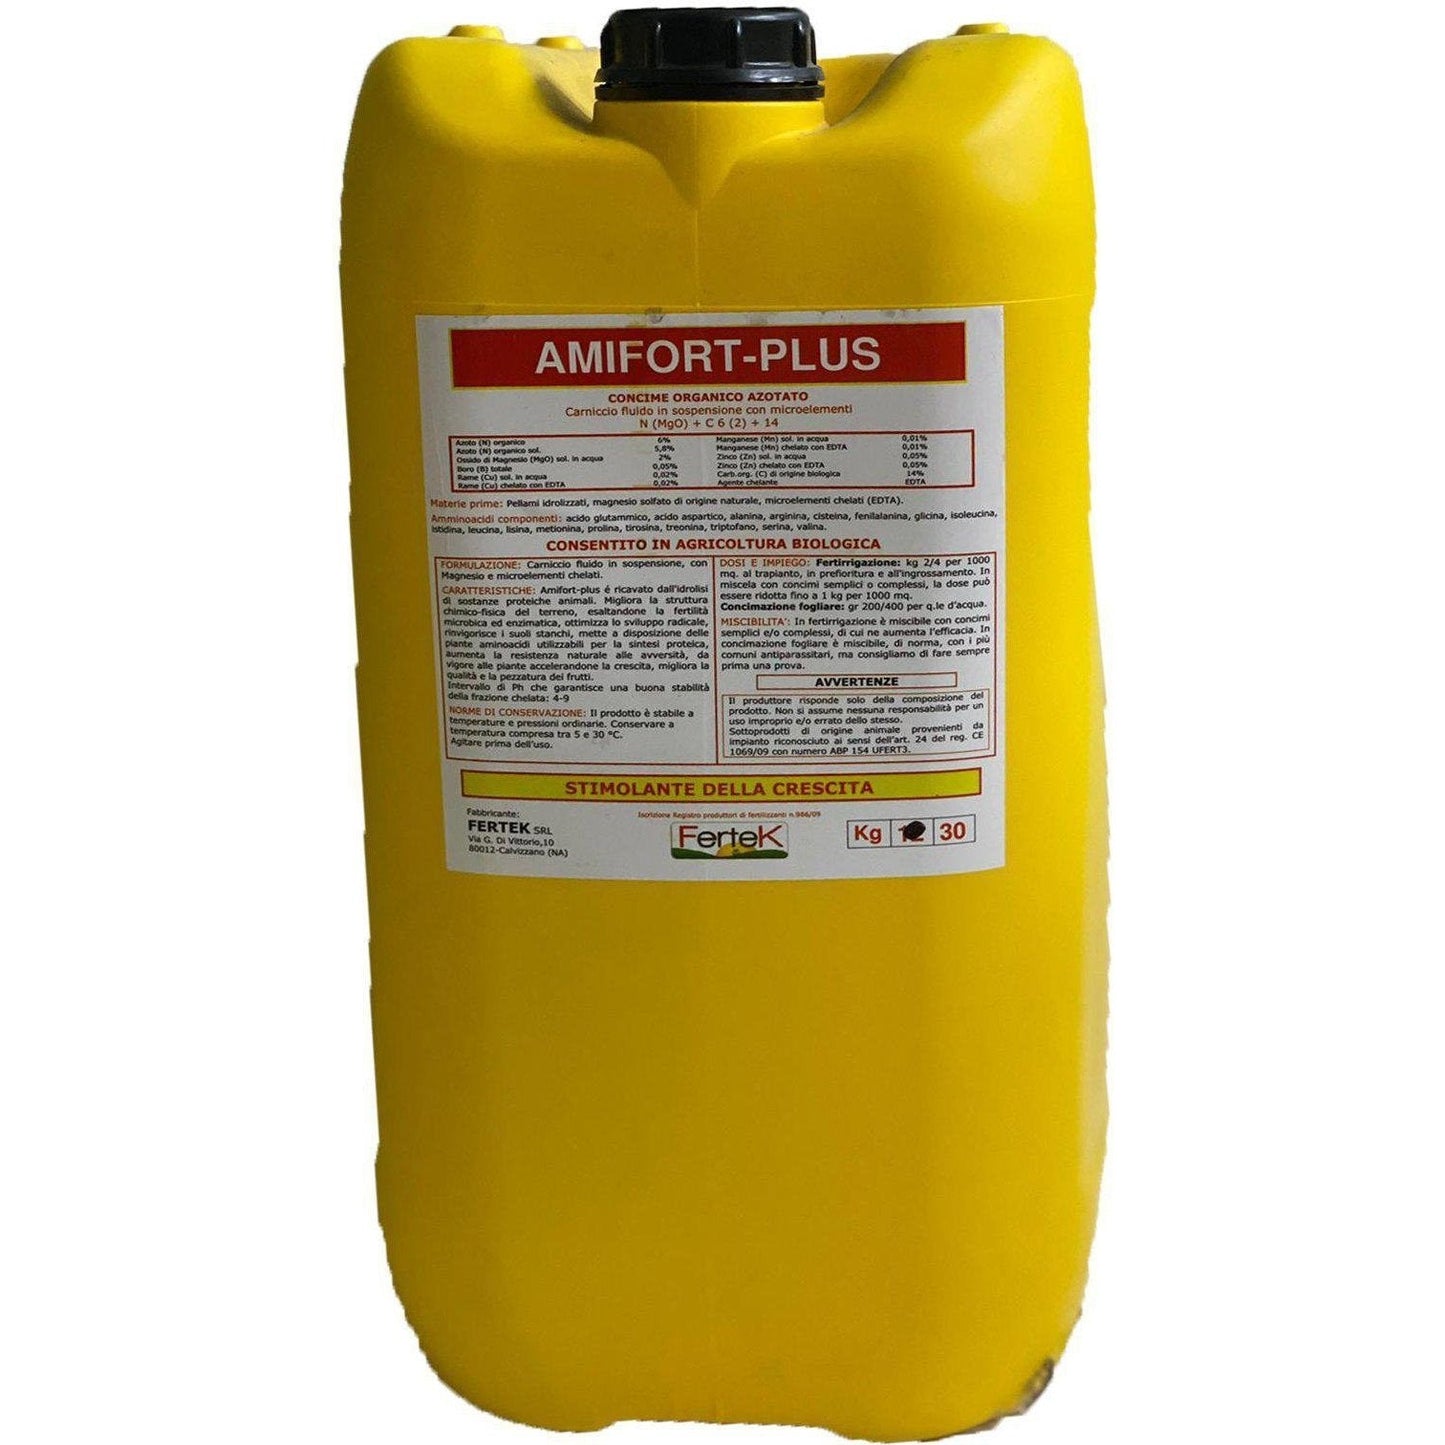 30 Kg AMIFORT-PLUS concime organico azotato stimolante della crescita carniccio fluido in sospensione con microelementi-Farmagrishop.it